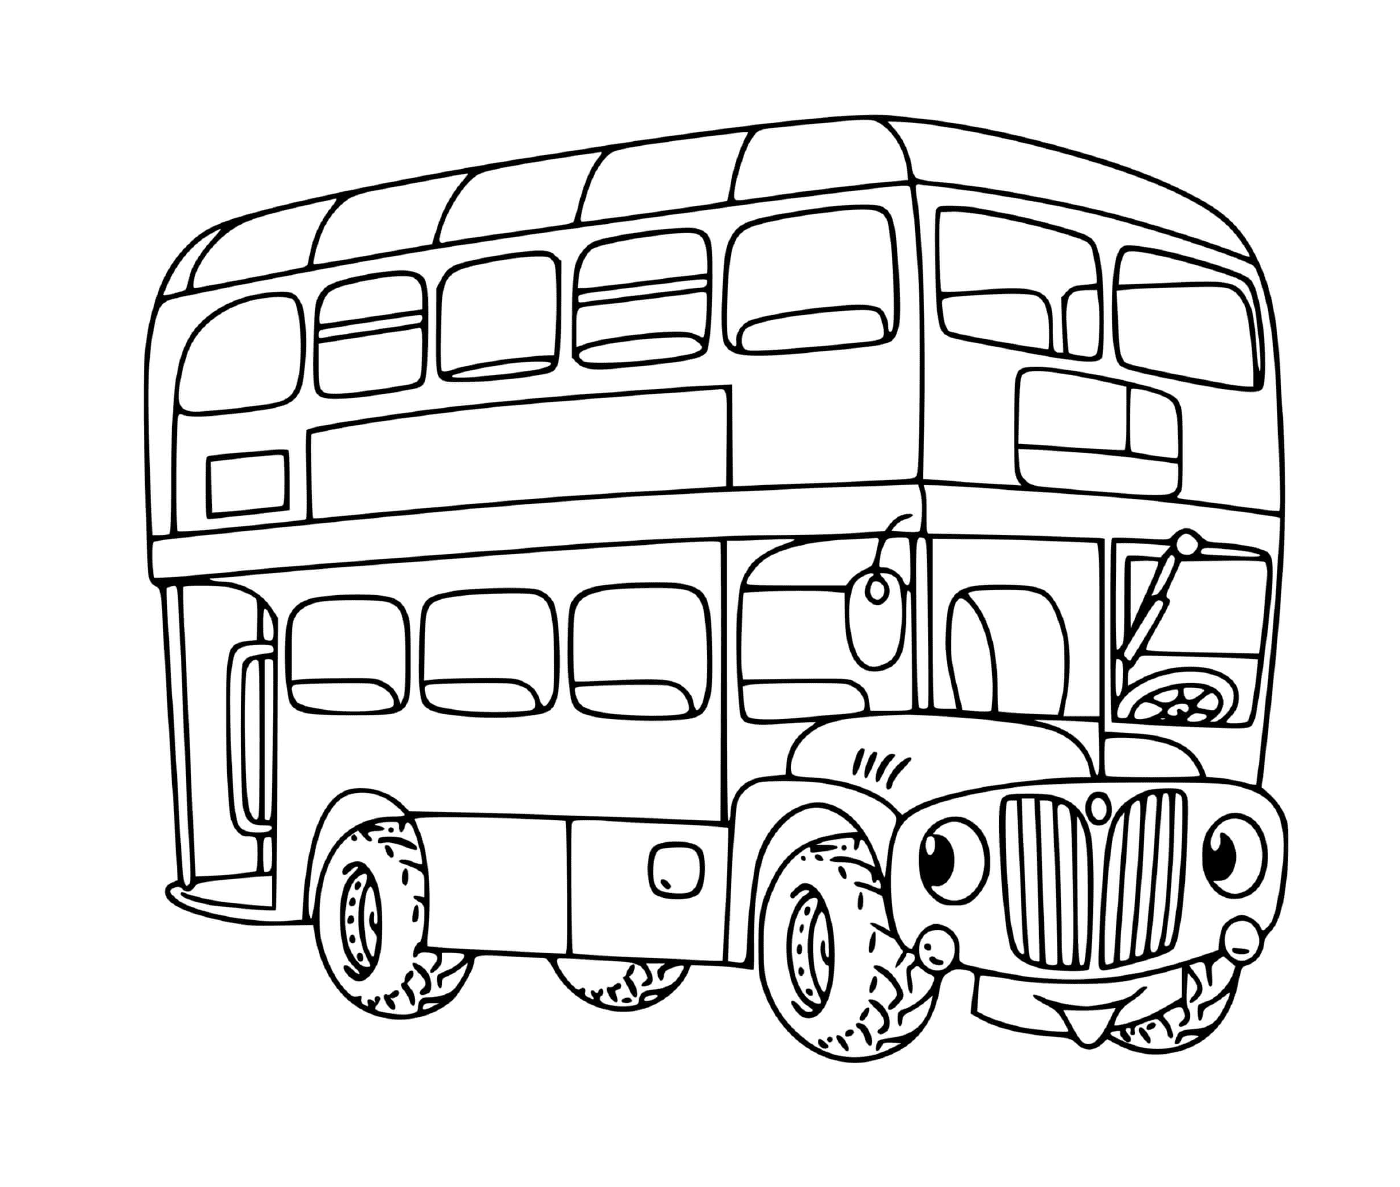  Ein zweistufiger Bus für Kinder 